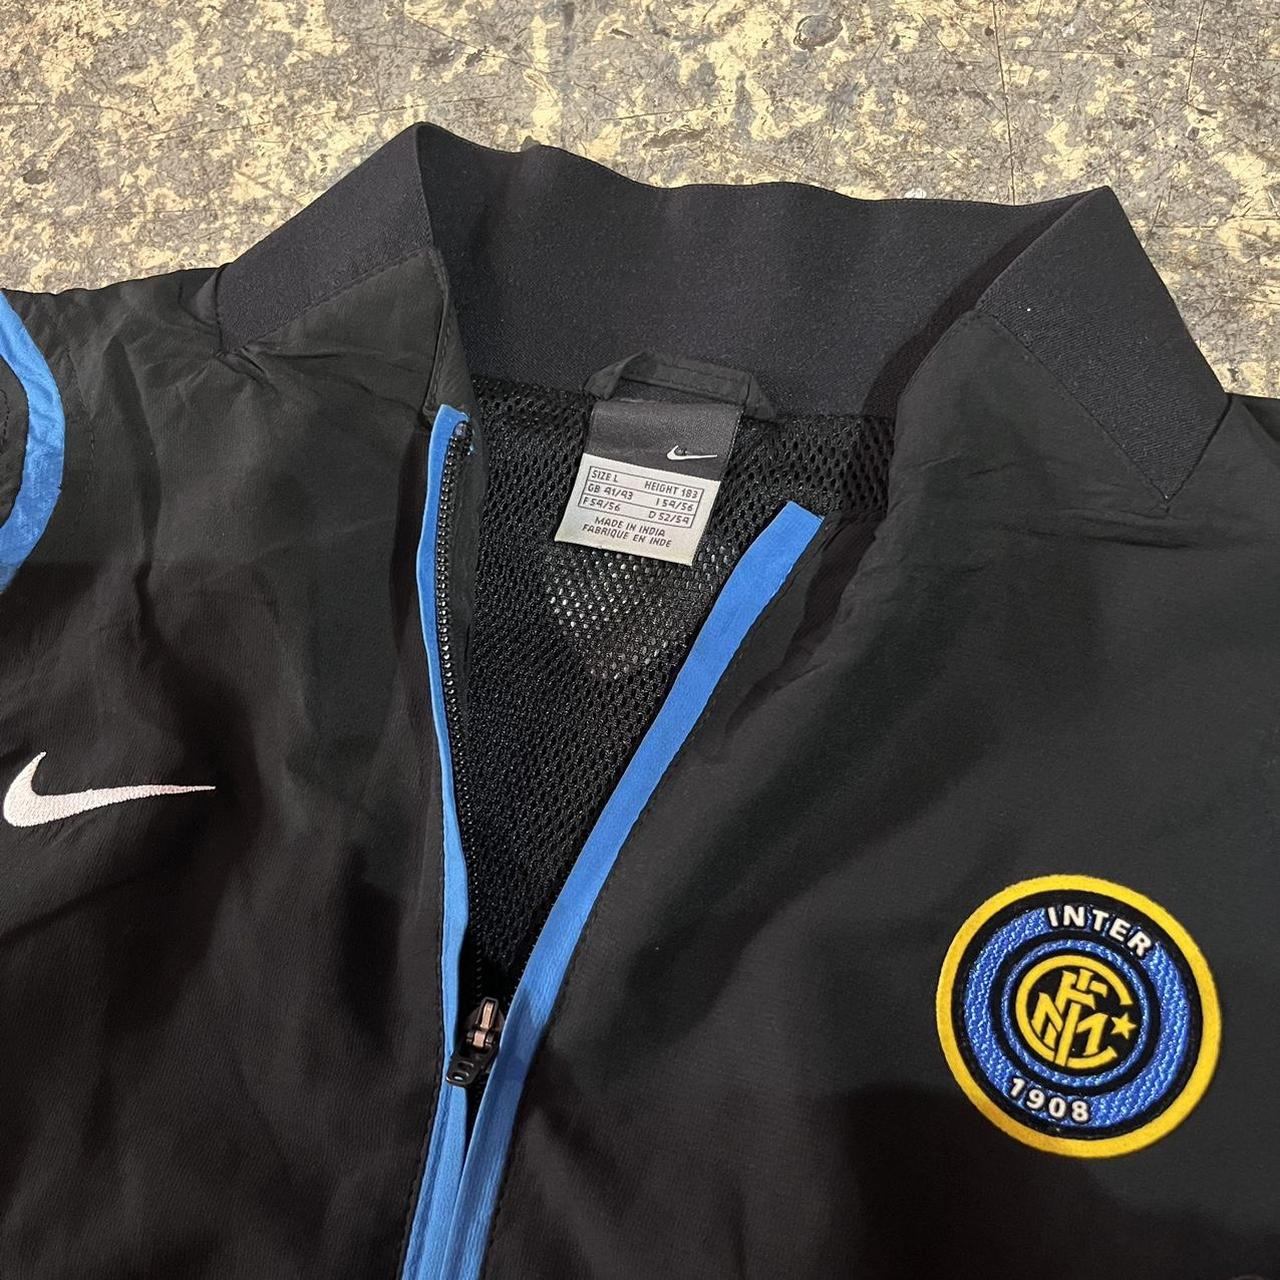 Inter Milan track jacket